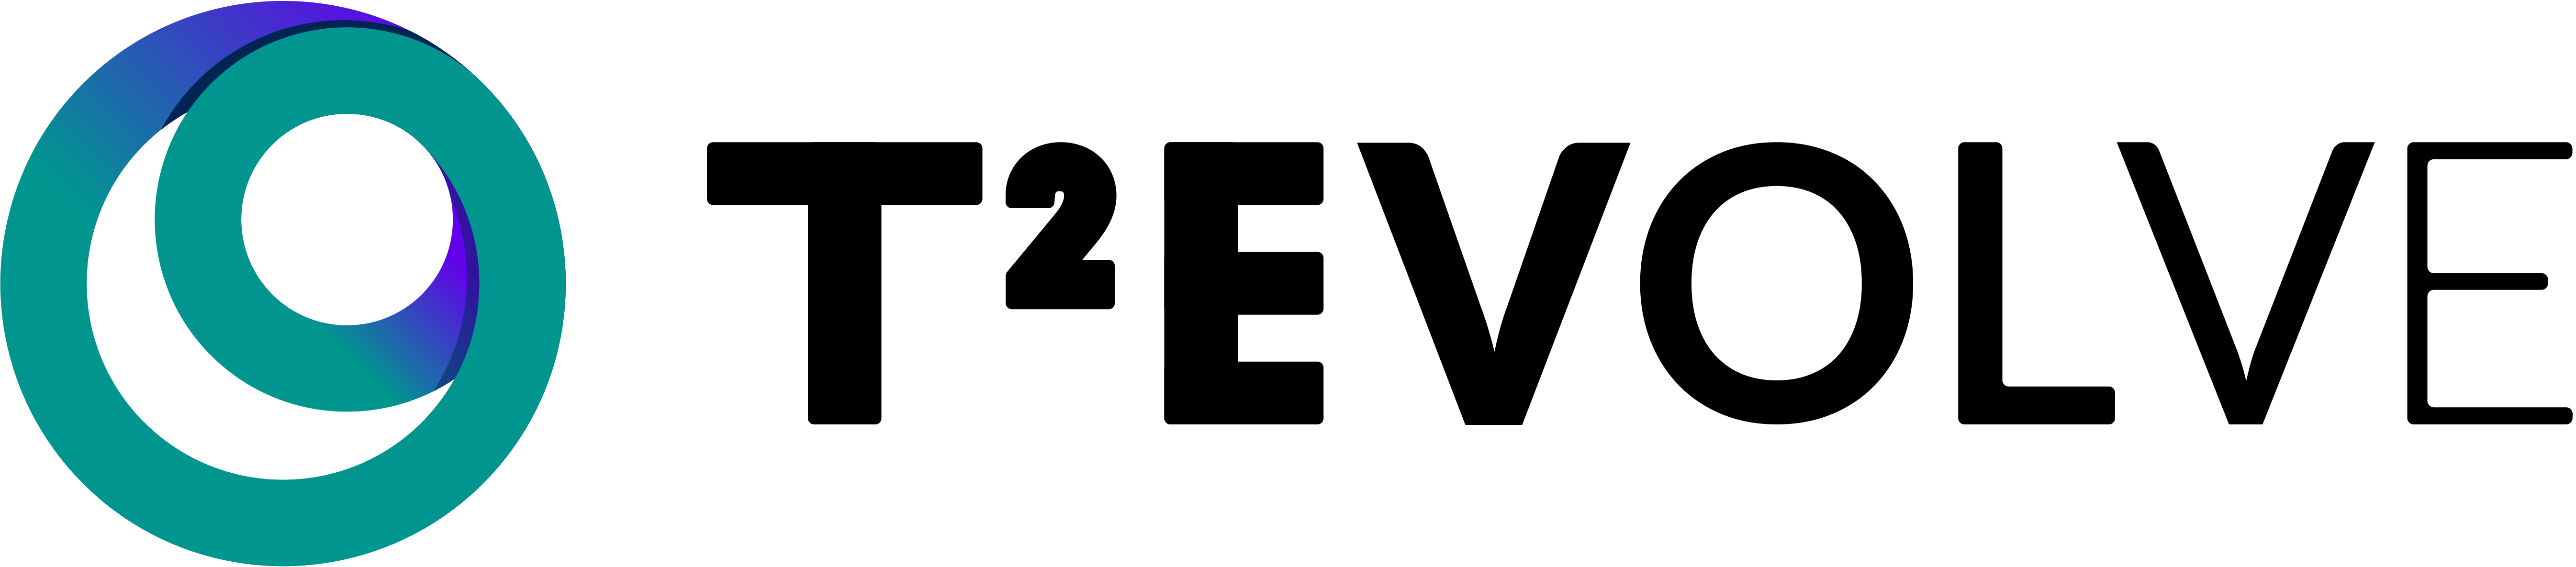 Logo T2EVOLVE